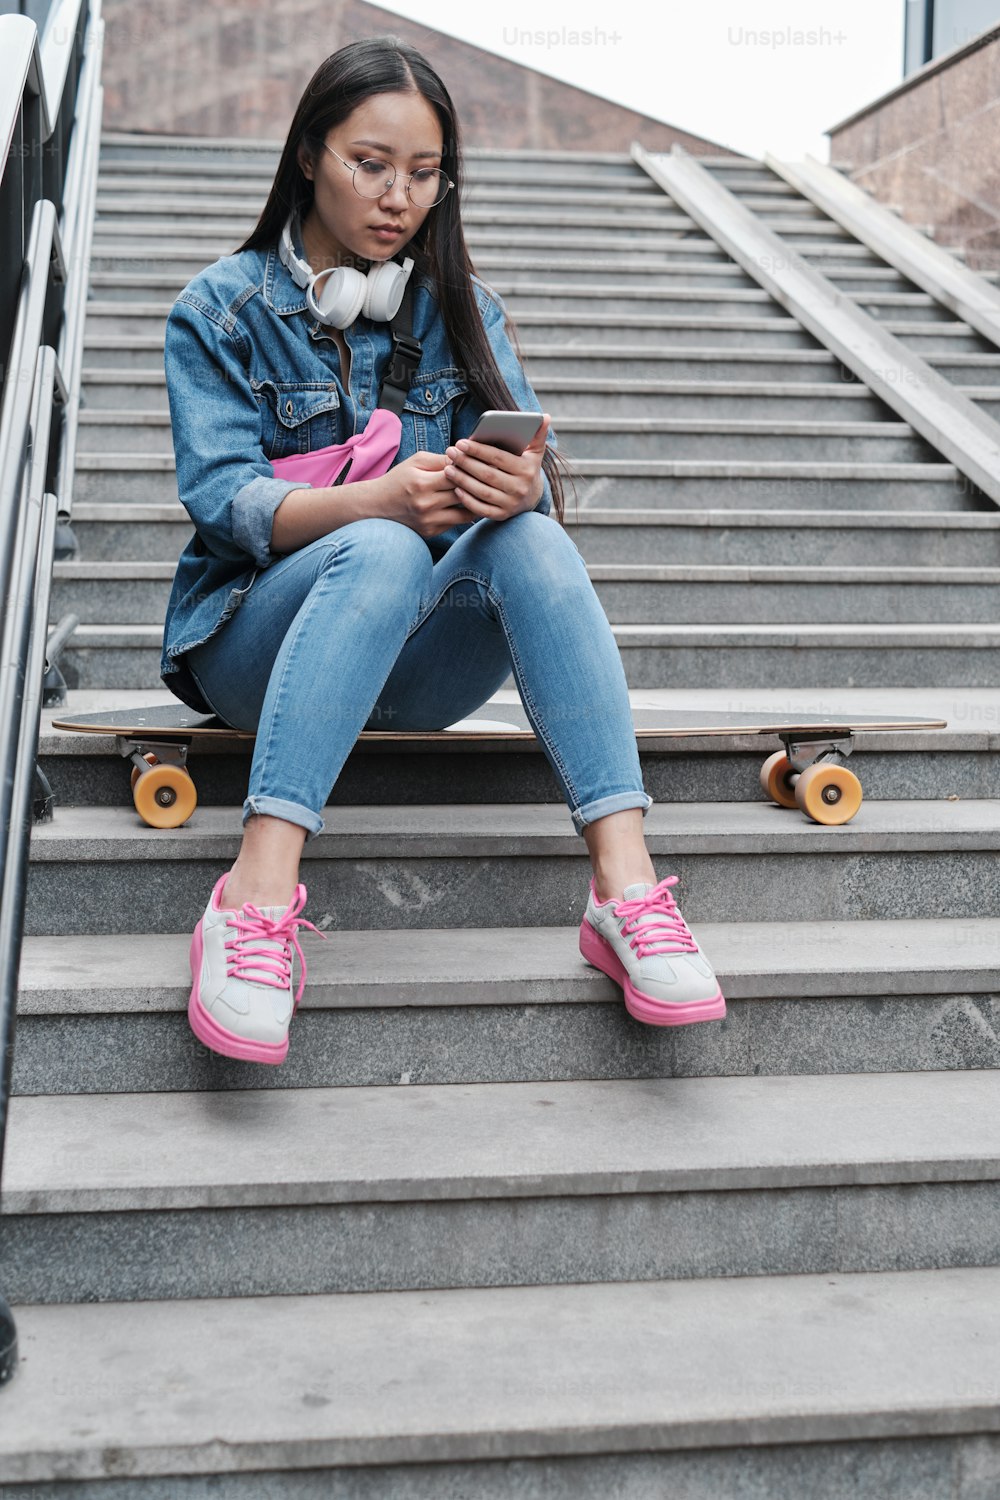 Mädchen mit einem Longboard sitzt auf der Treppe und schaut auf ihren Handybildschirm.